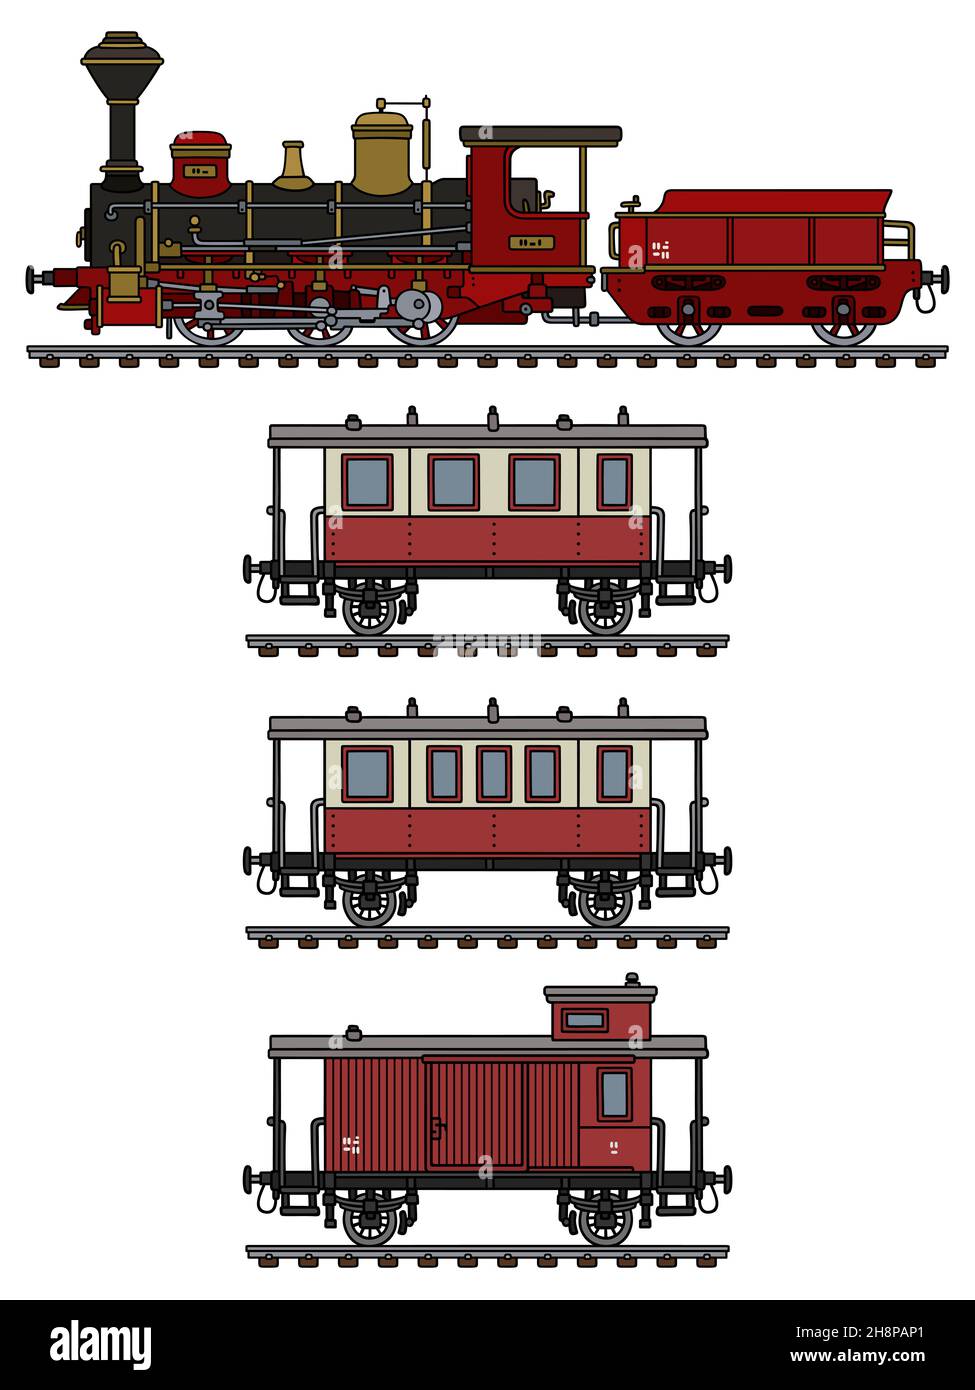 Disegno a mano di un treno a vapore rosso d'epoca Foto Stock